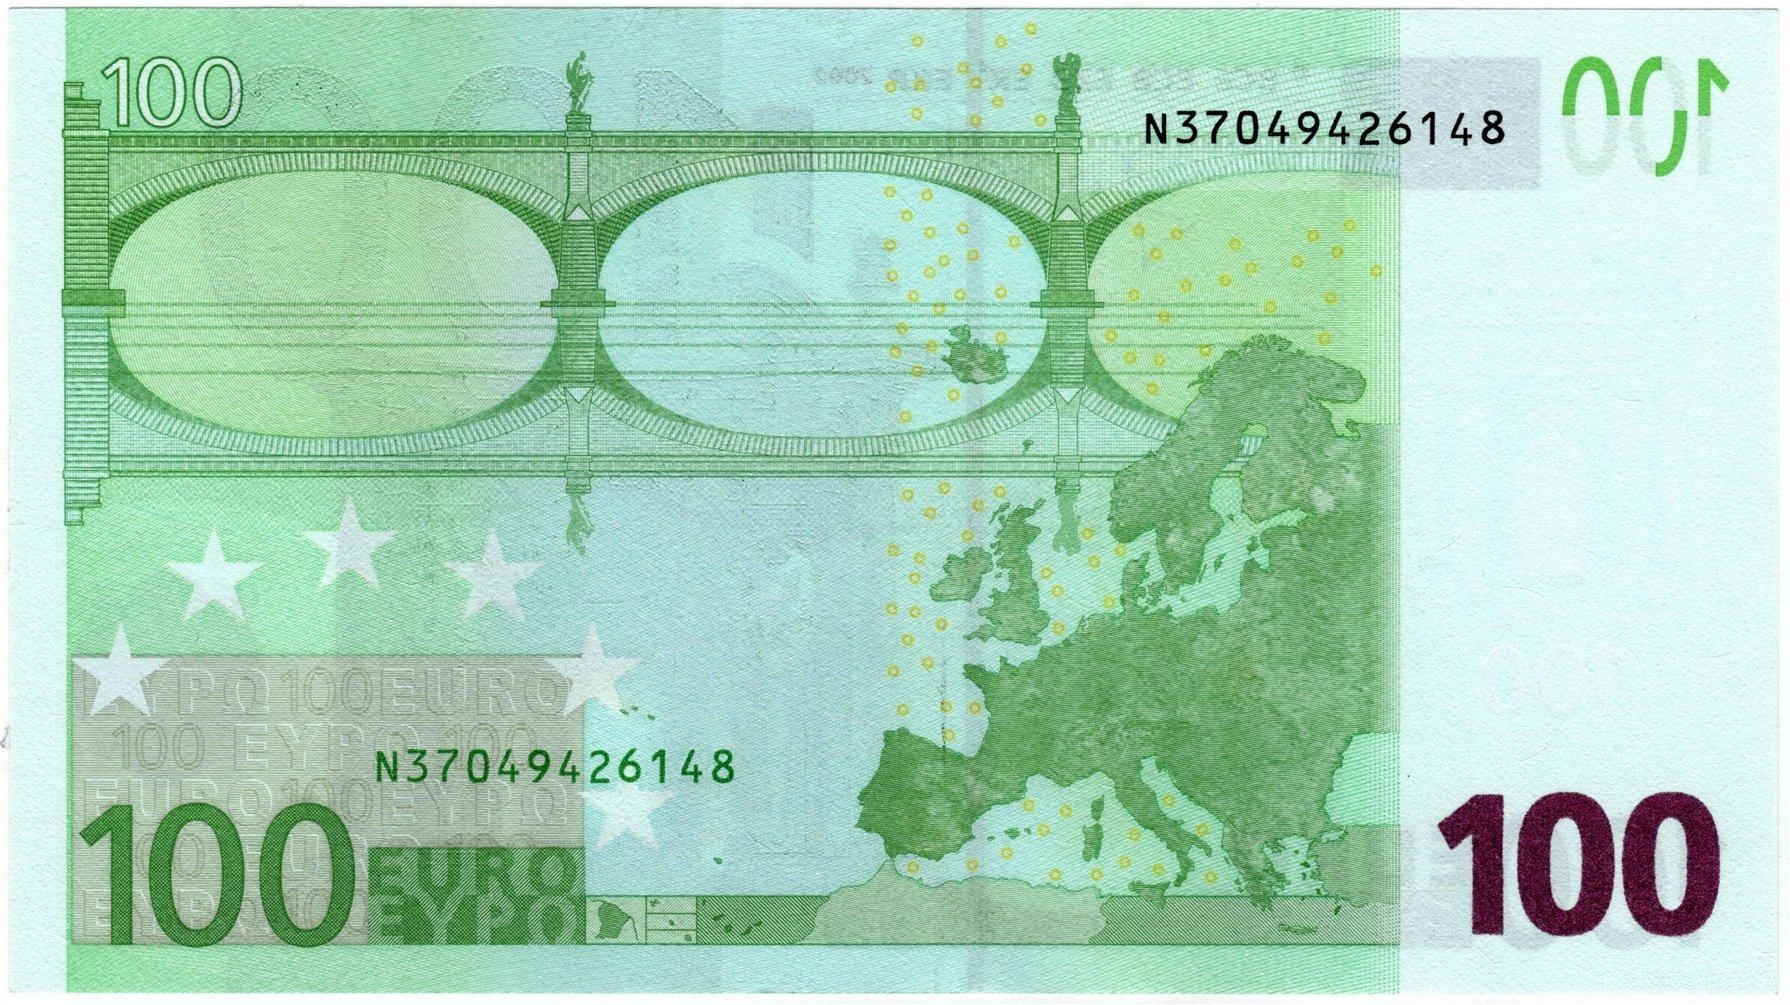 Банкнота 2002 года номиналом 100 евро: цвет – зеленый, архитектурный стиль – барокко. Источник https://zverinfo.ru/